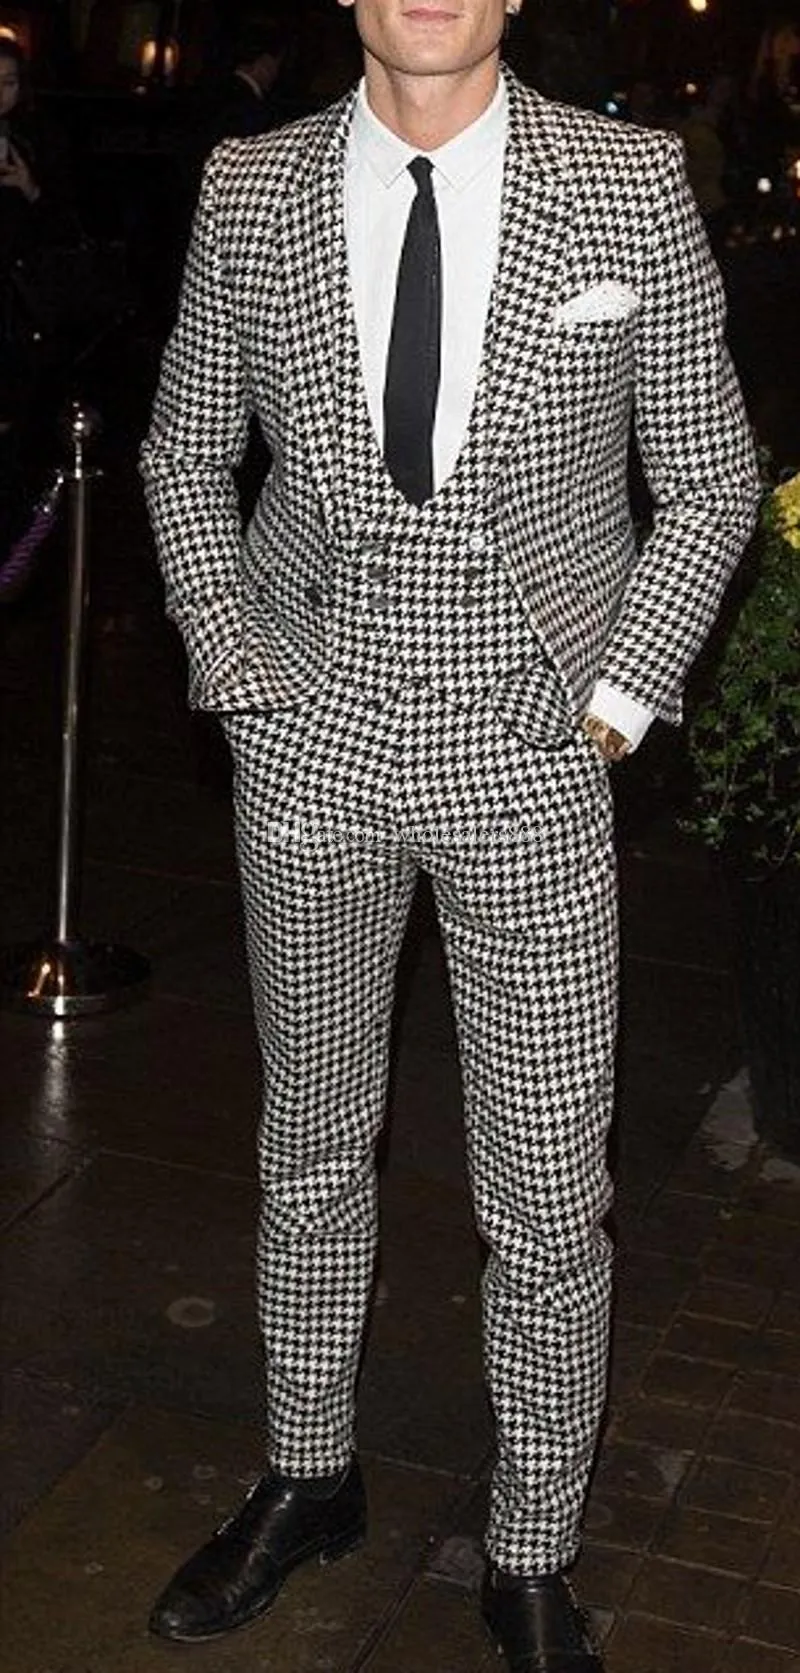 Balıksırtı Damat Smokin Yeni Moda Groomsmen Erkek Gelinlik Mükemmel Adam Ceket Blazer 3 Parça Suit (Ceket + Pantolon + Yelek + Kravat) 702